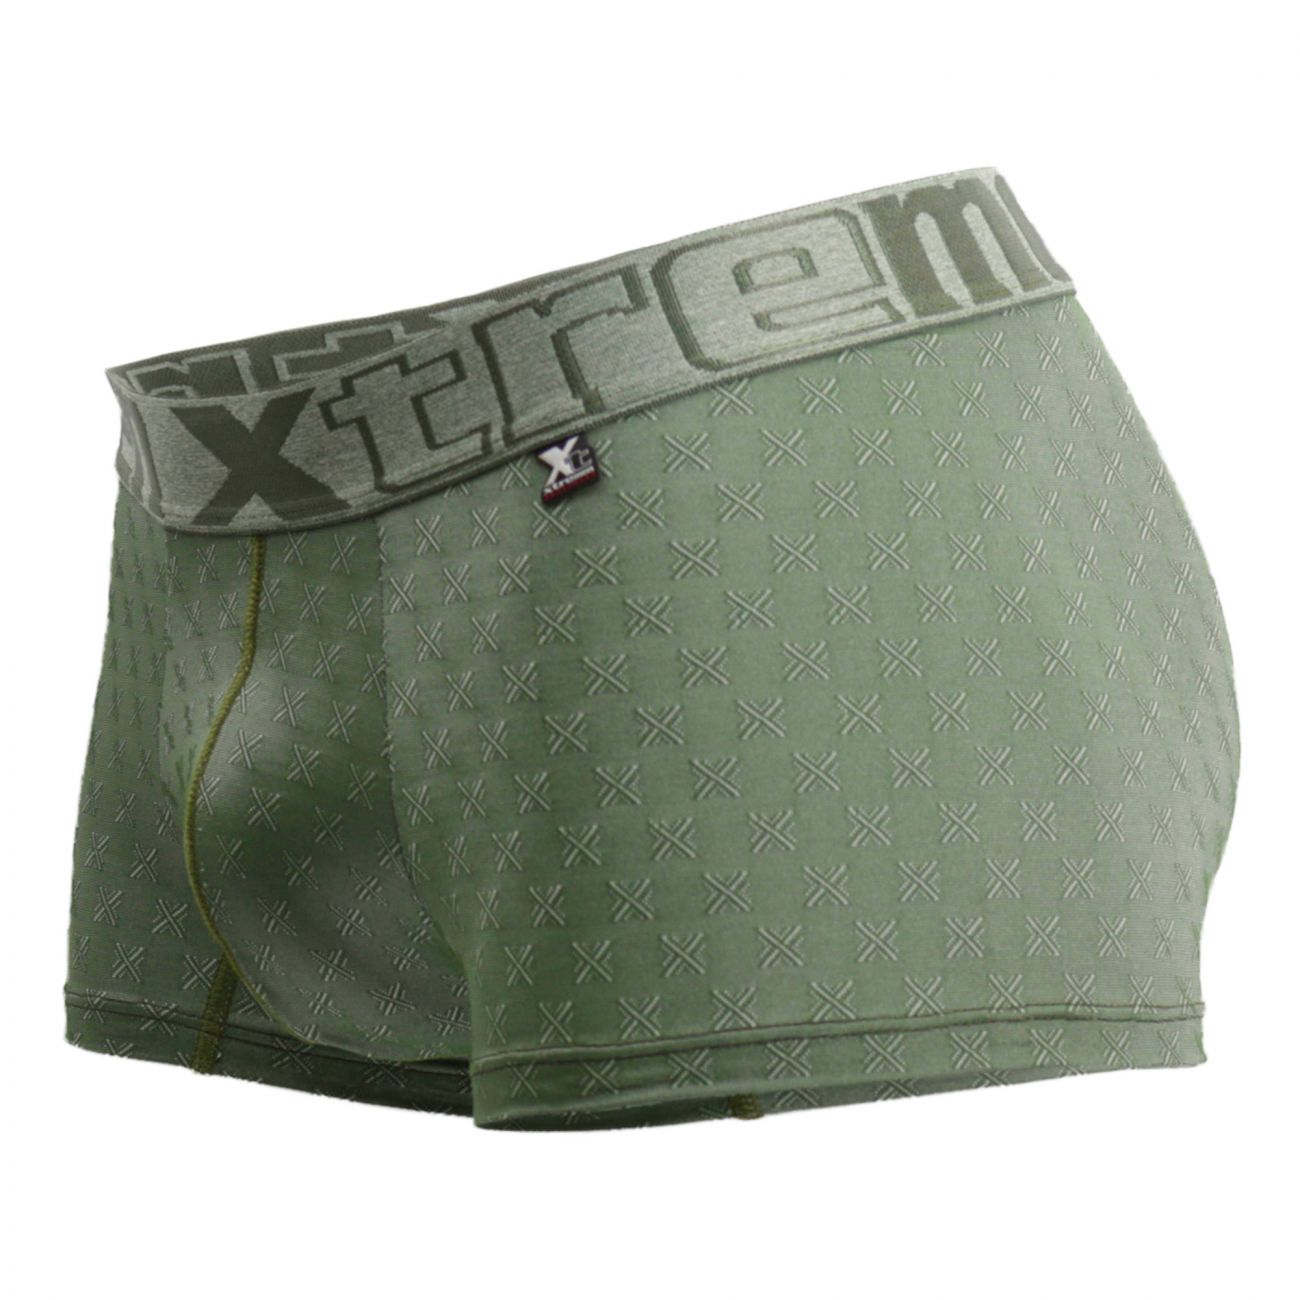 Xtremen 51442C Jacquard -X- Boxer Briefs Color Green